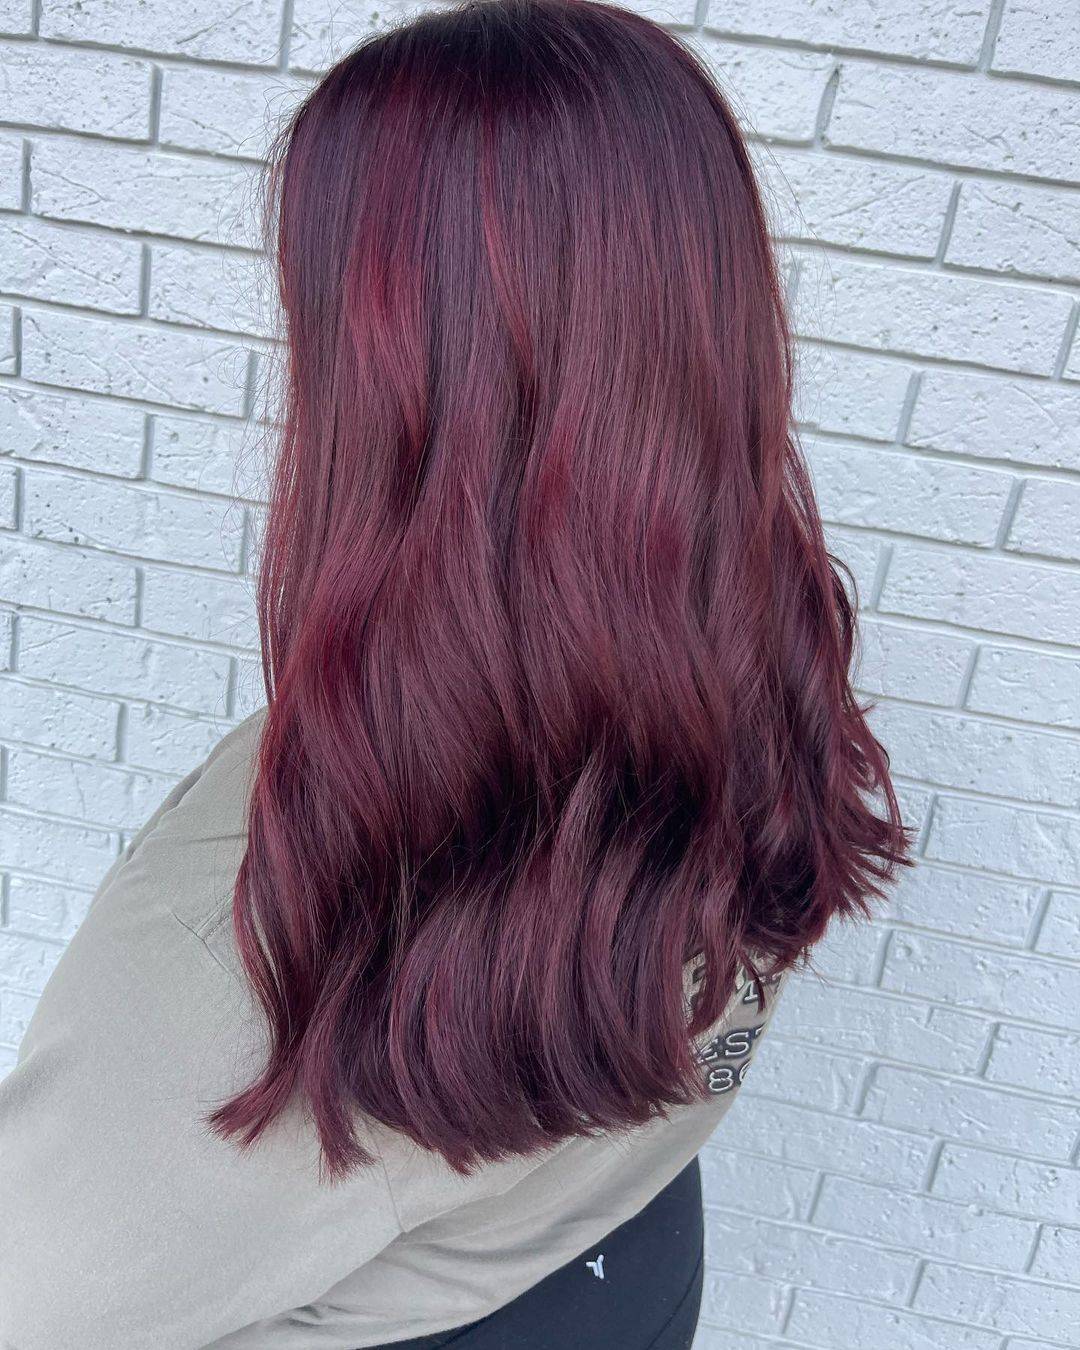 Burgundy hair color 229 burgundy hair color | burgundy hair color for women | burgundy hair color highlights Burgundy Hair Color